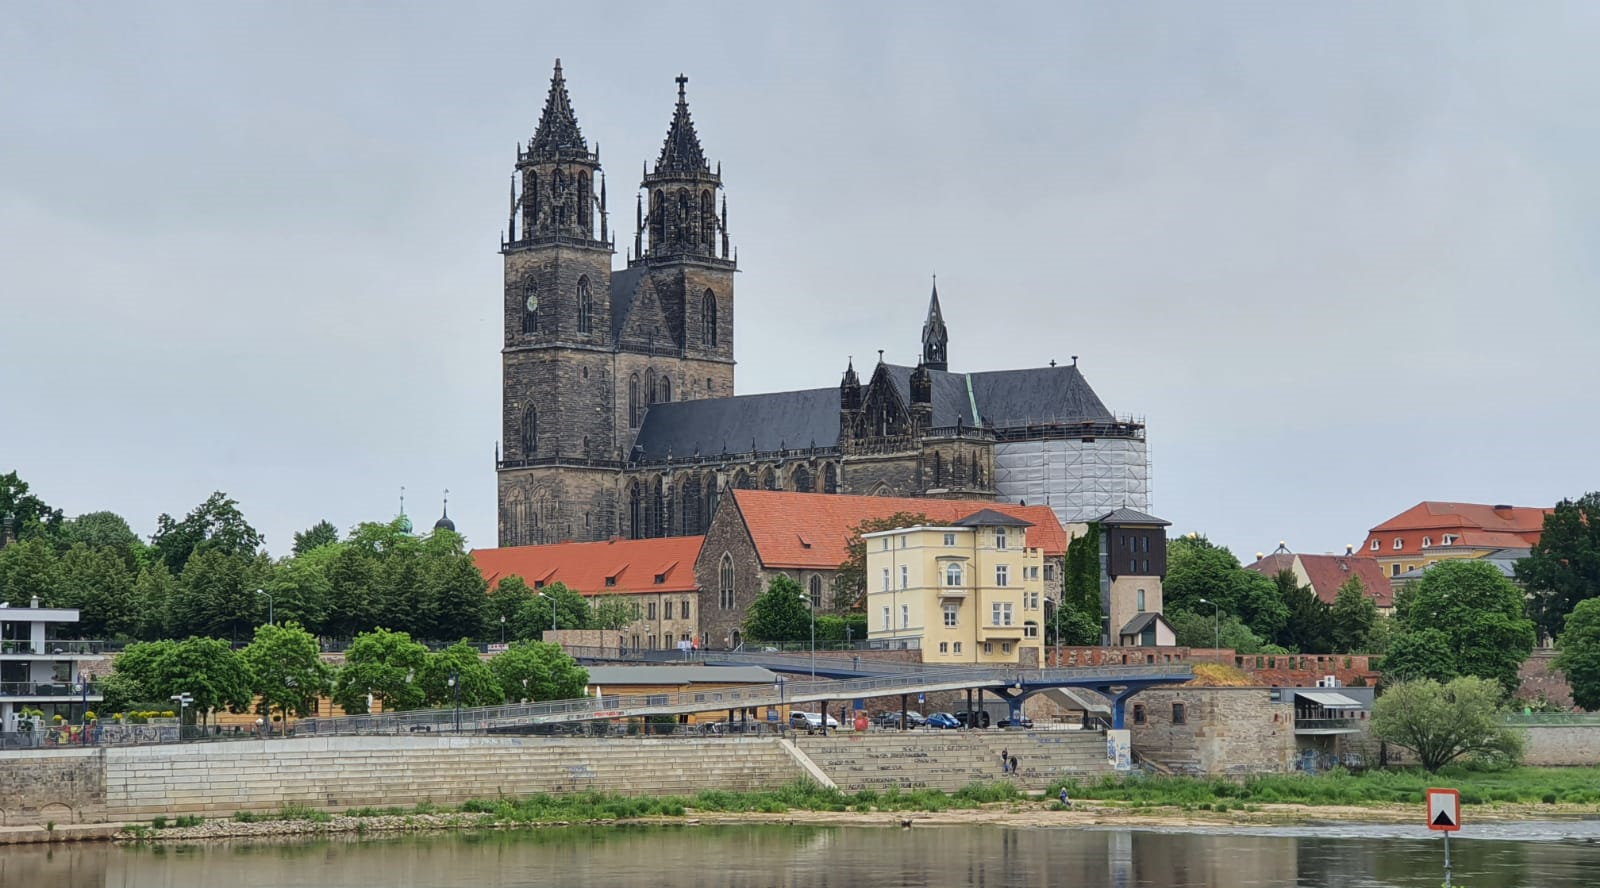 Berufung zurückgewiesen: Familie aus Magdeburg fordert Schmerzensgeld wegen einer behaupteten unrechtmäßigen Quarantäne aufgrund eines Corona-Tests